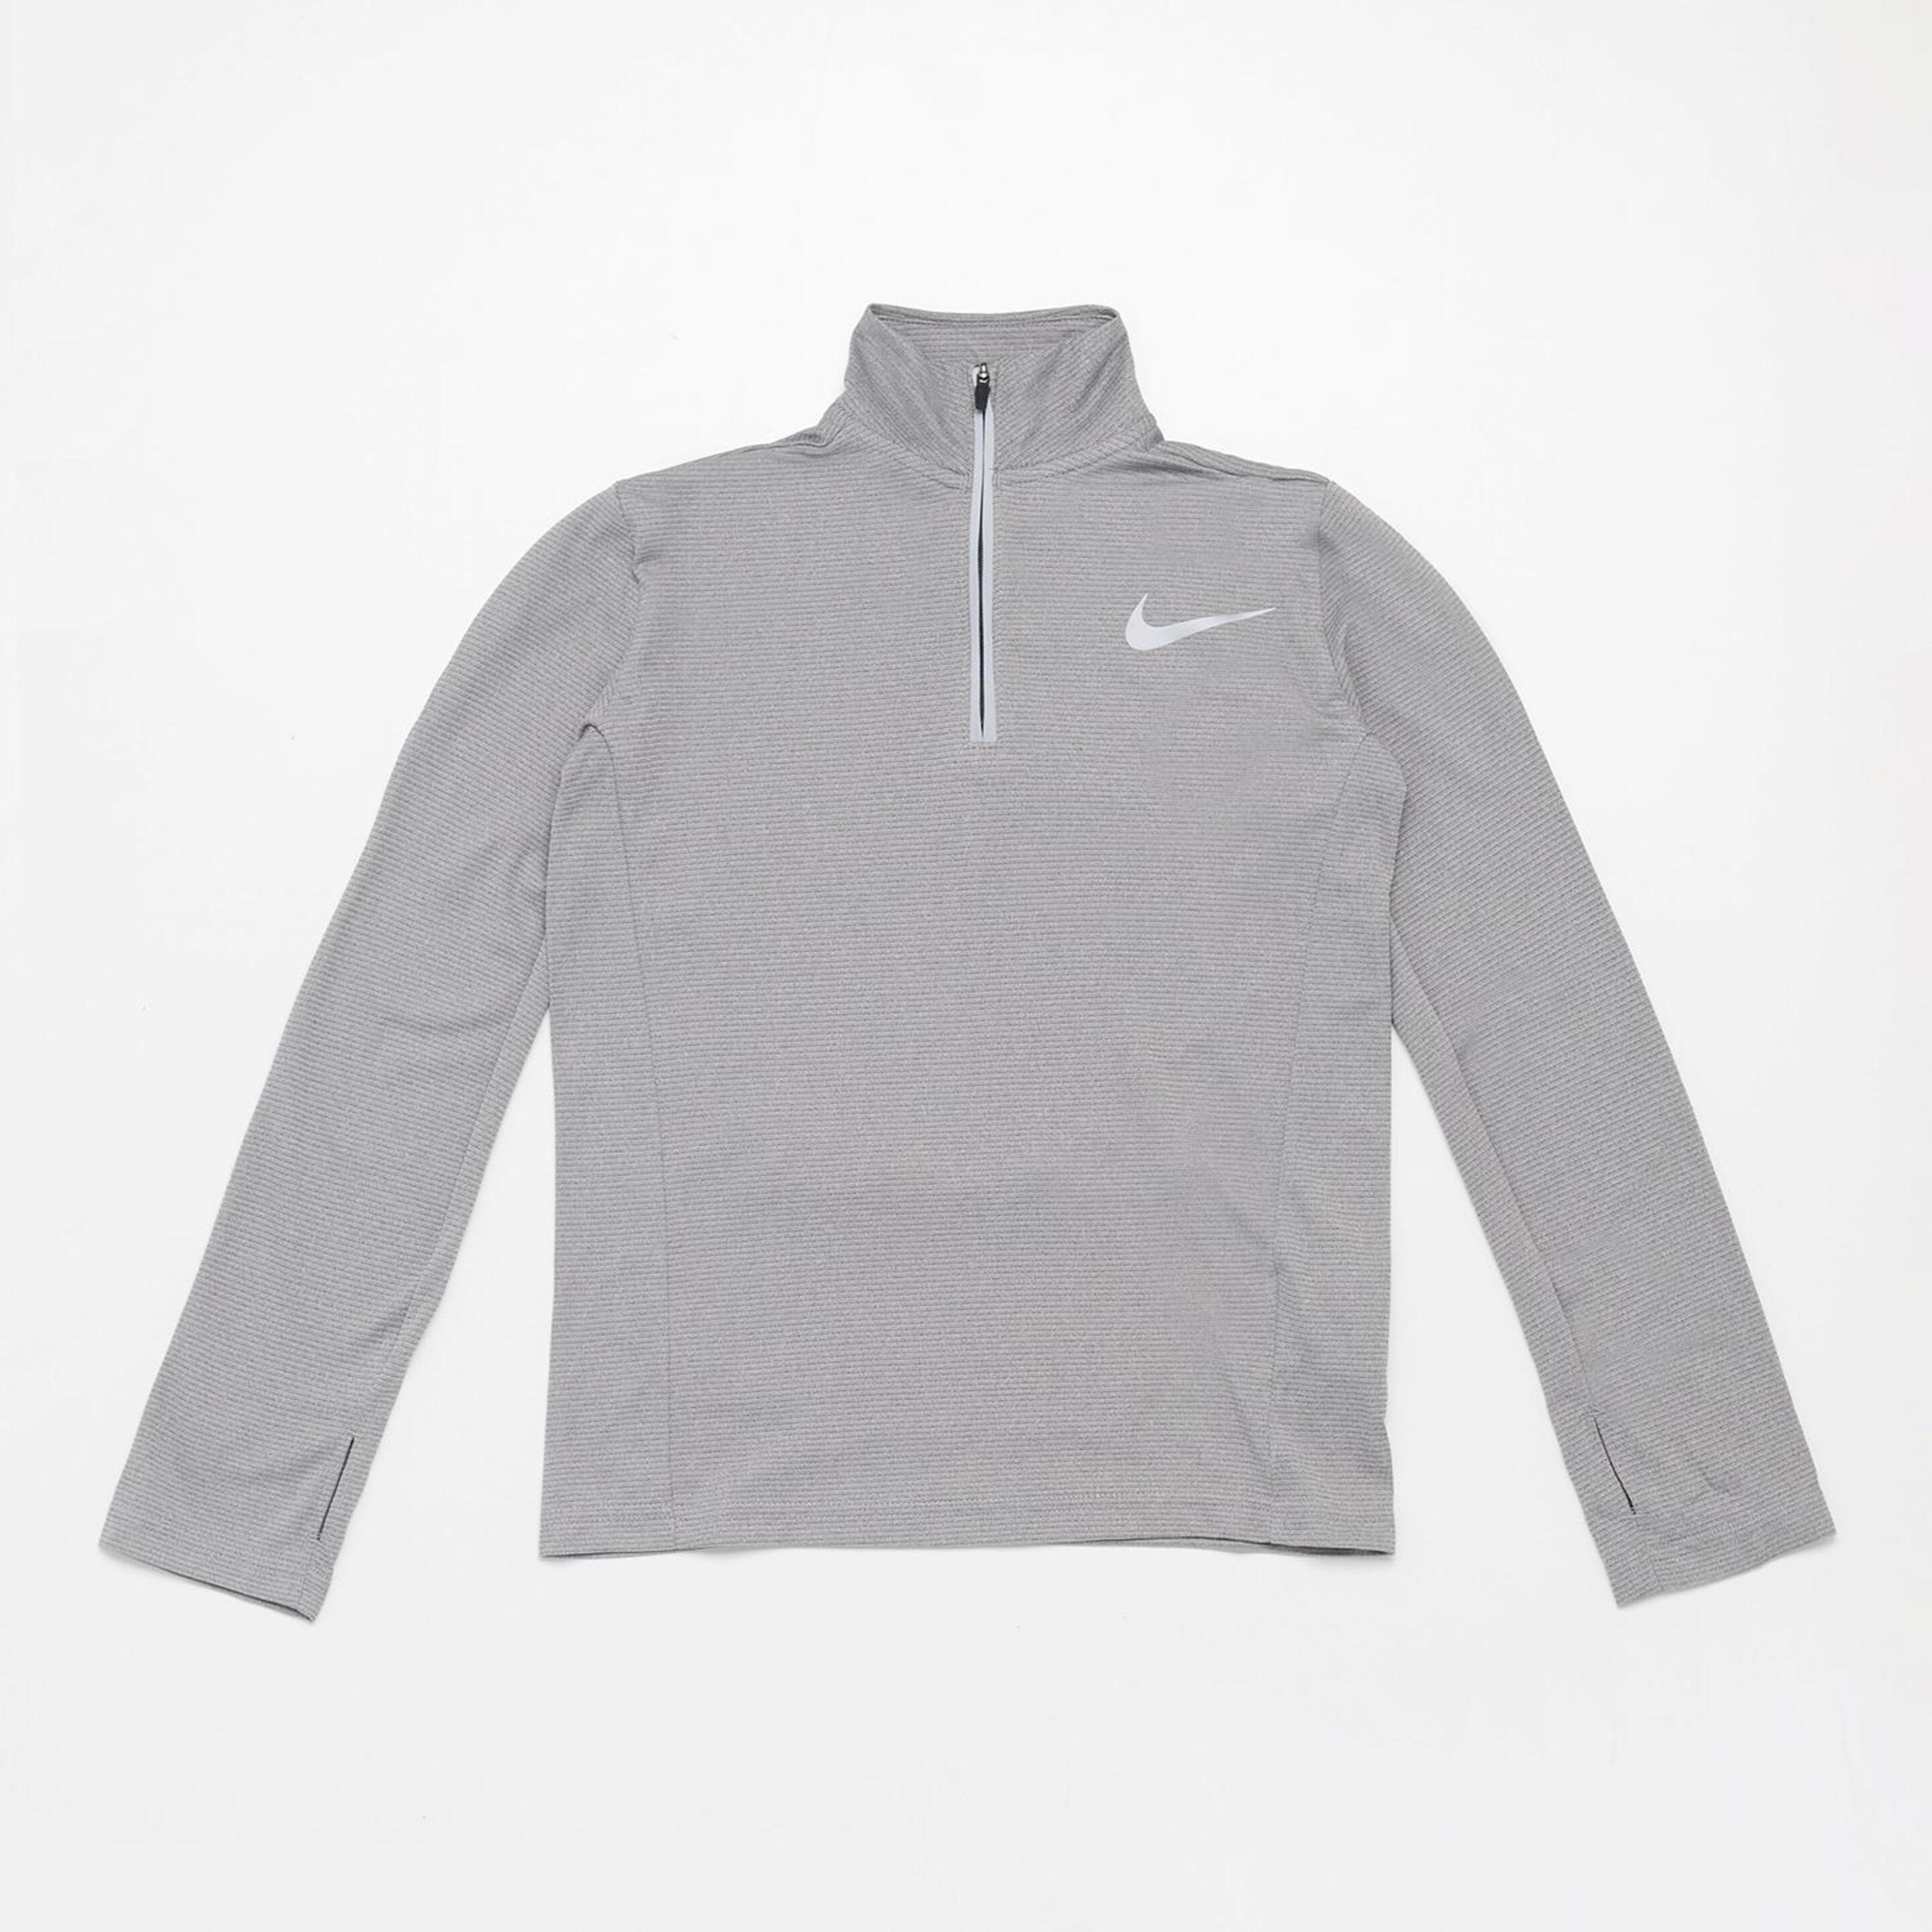 Camiseta Nike - gris - Camiseta Niño